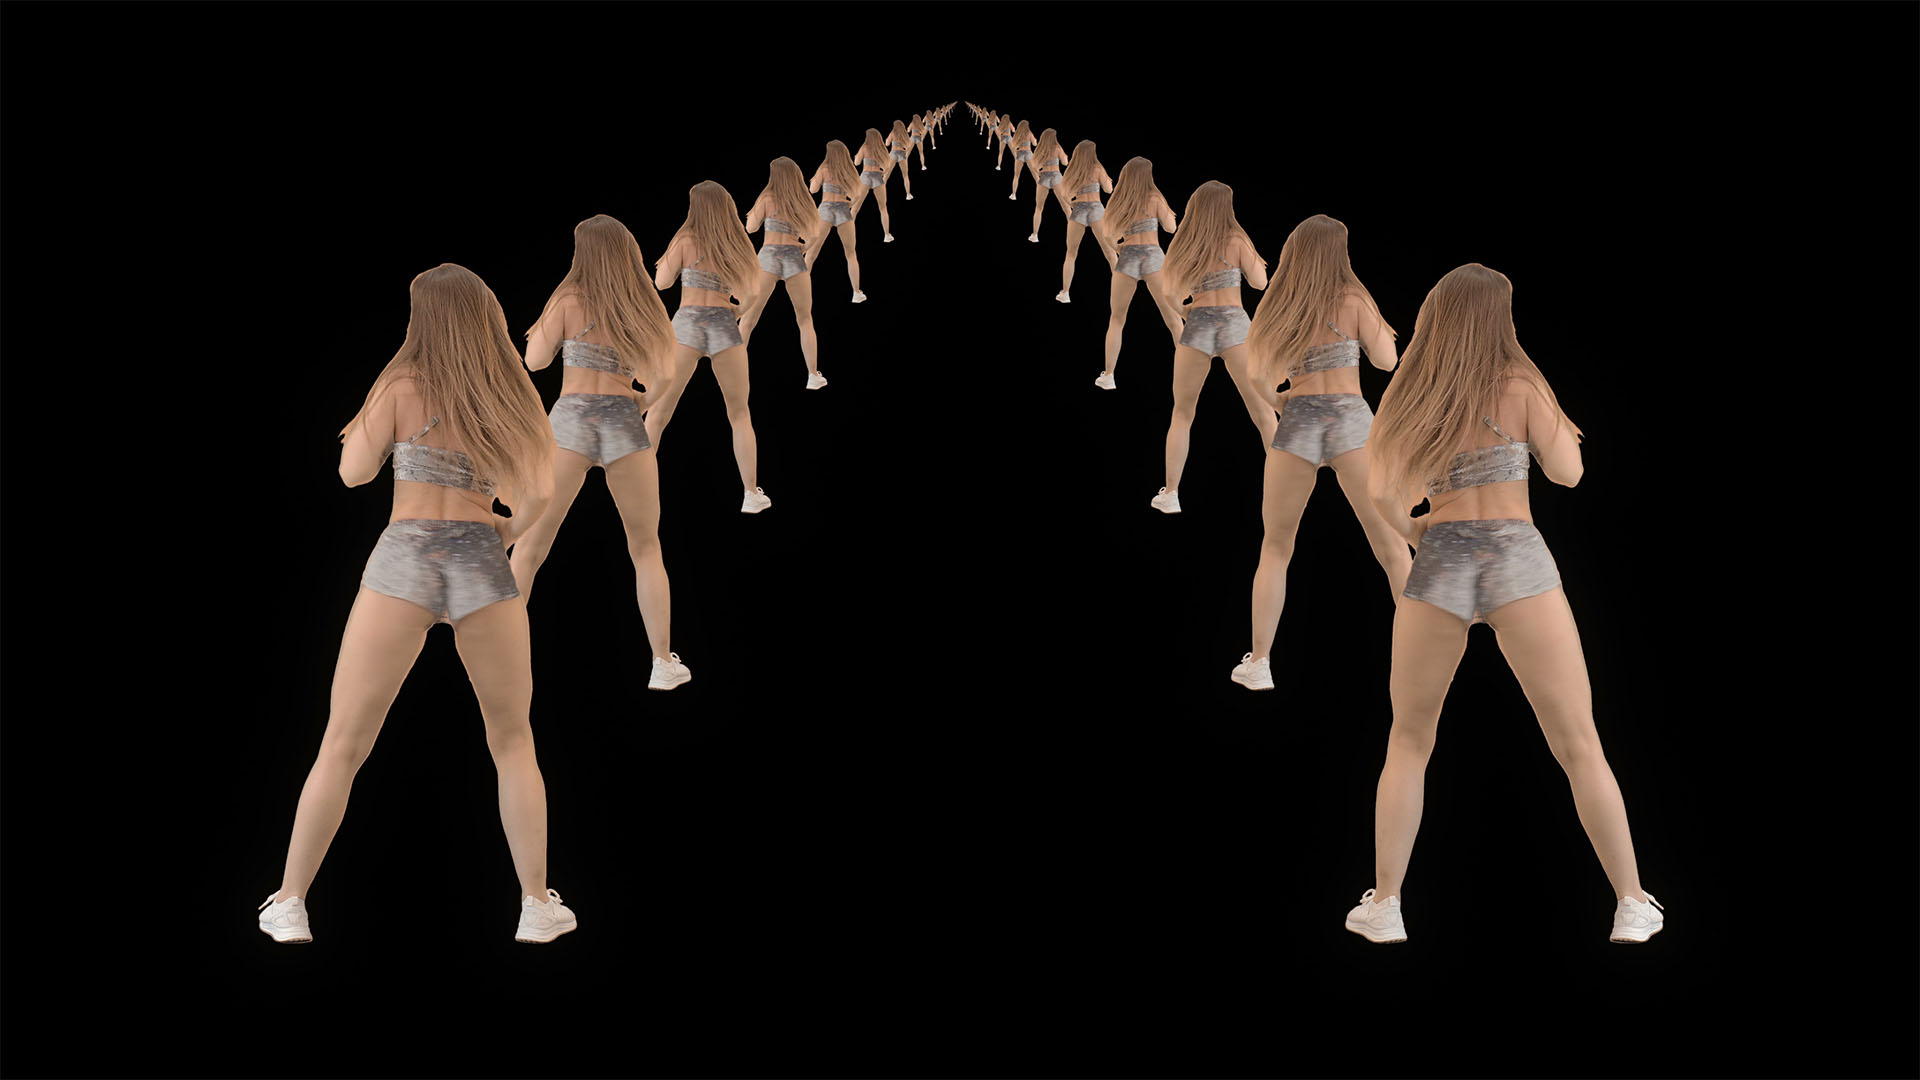 twerking dancing girl video footage